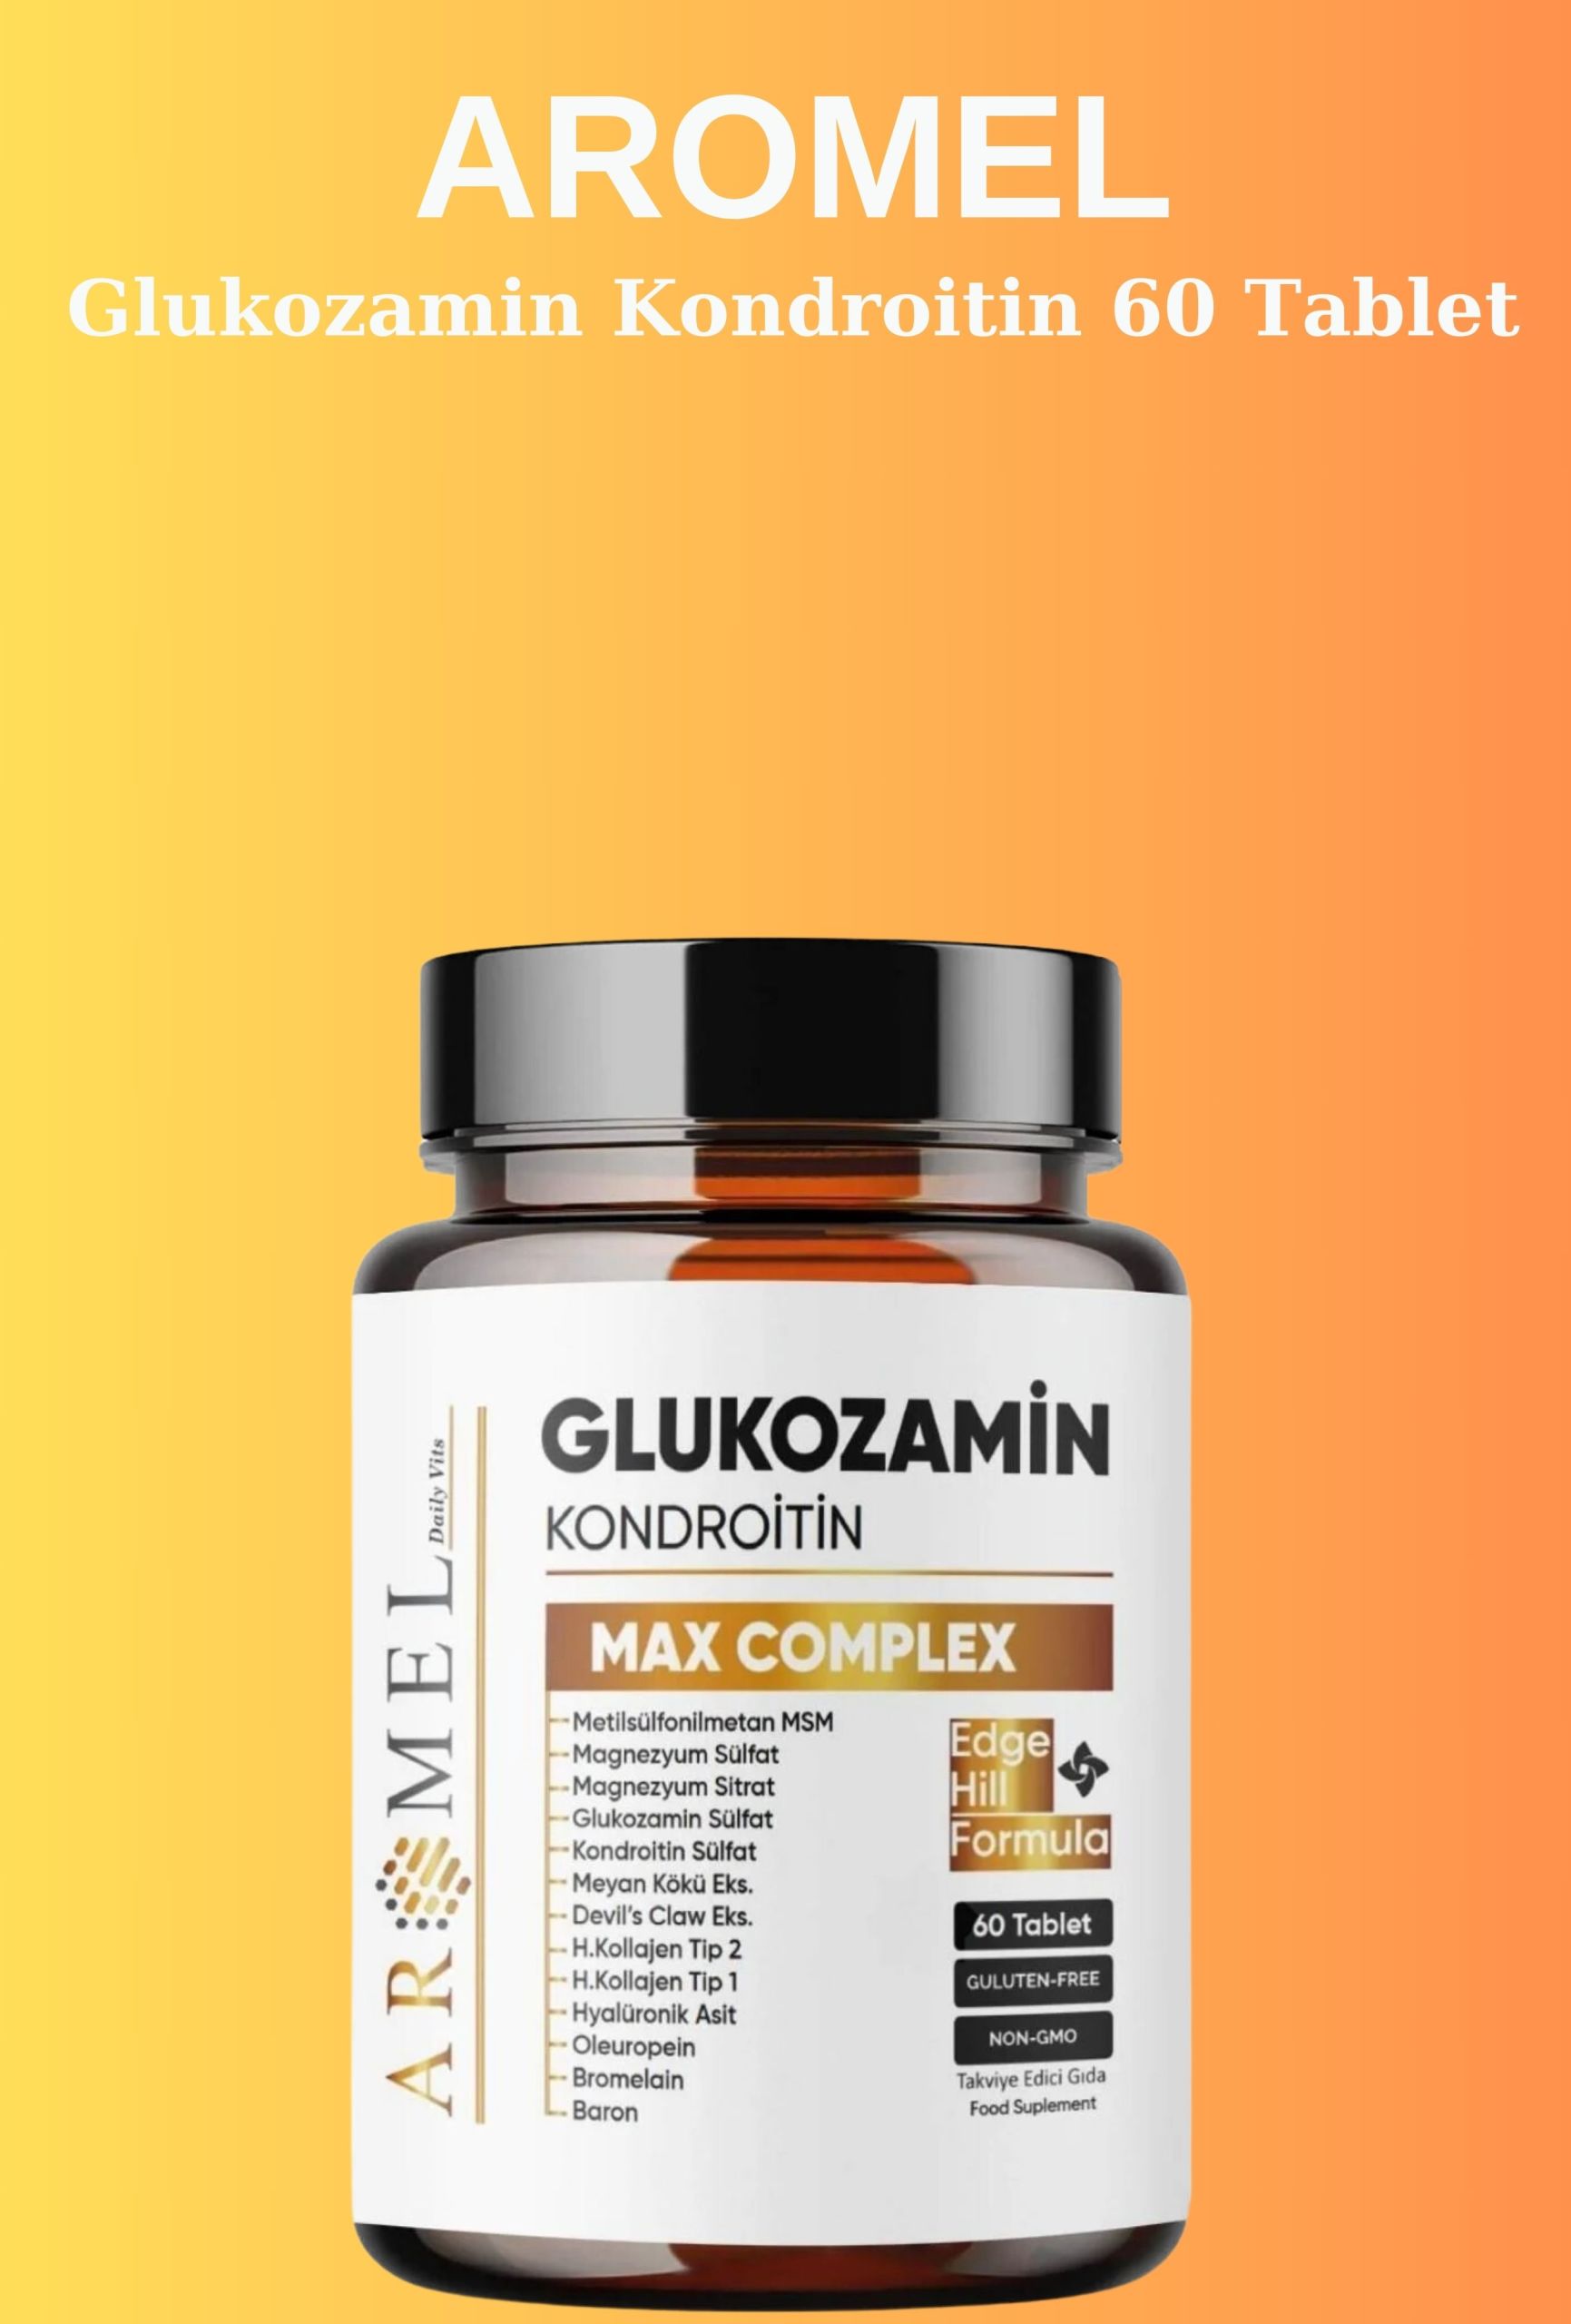 Aromel Glukozamin Tablet